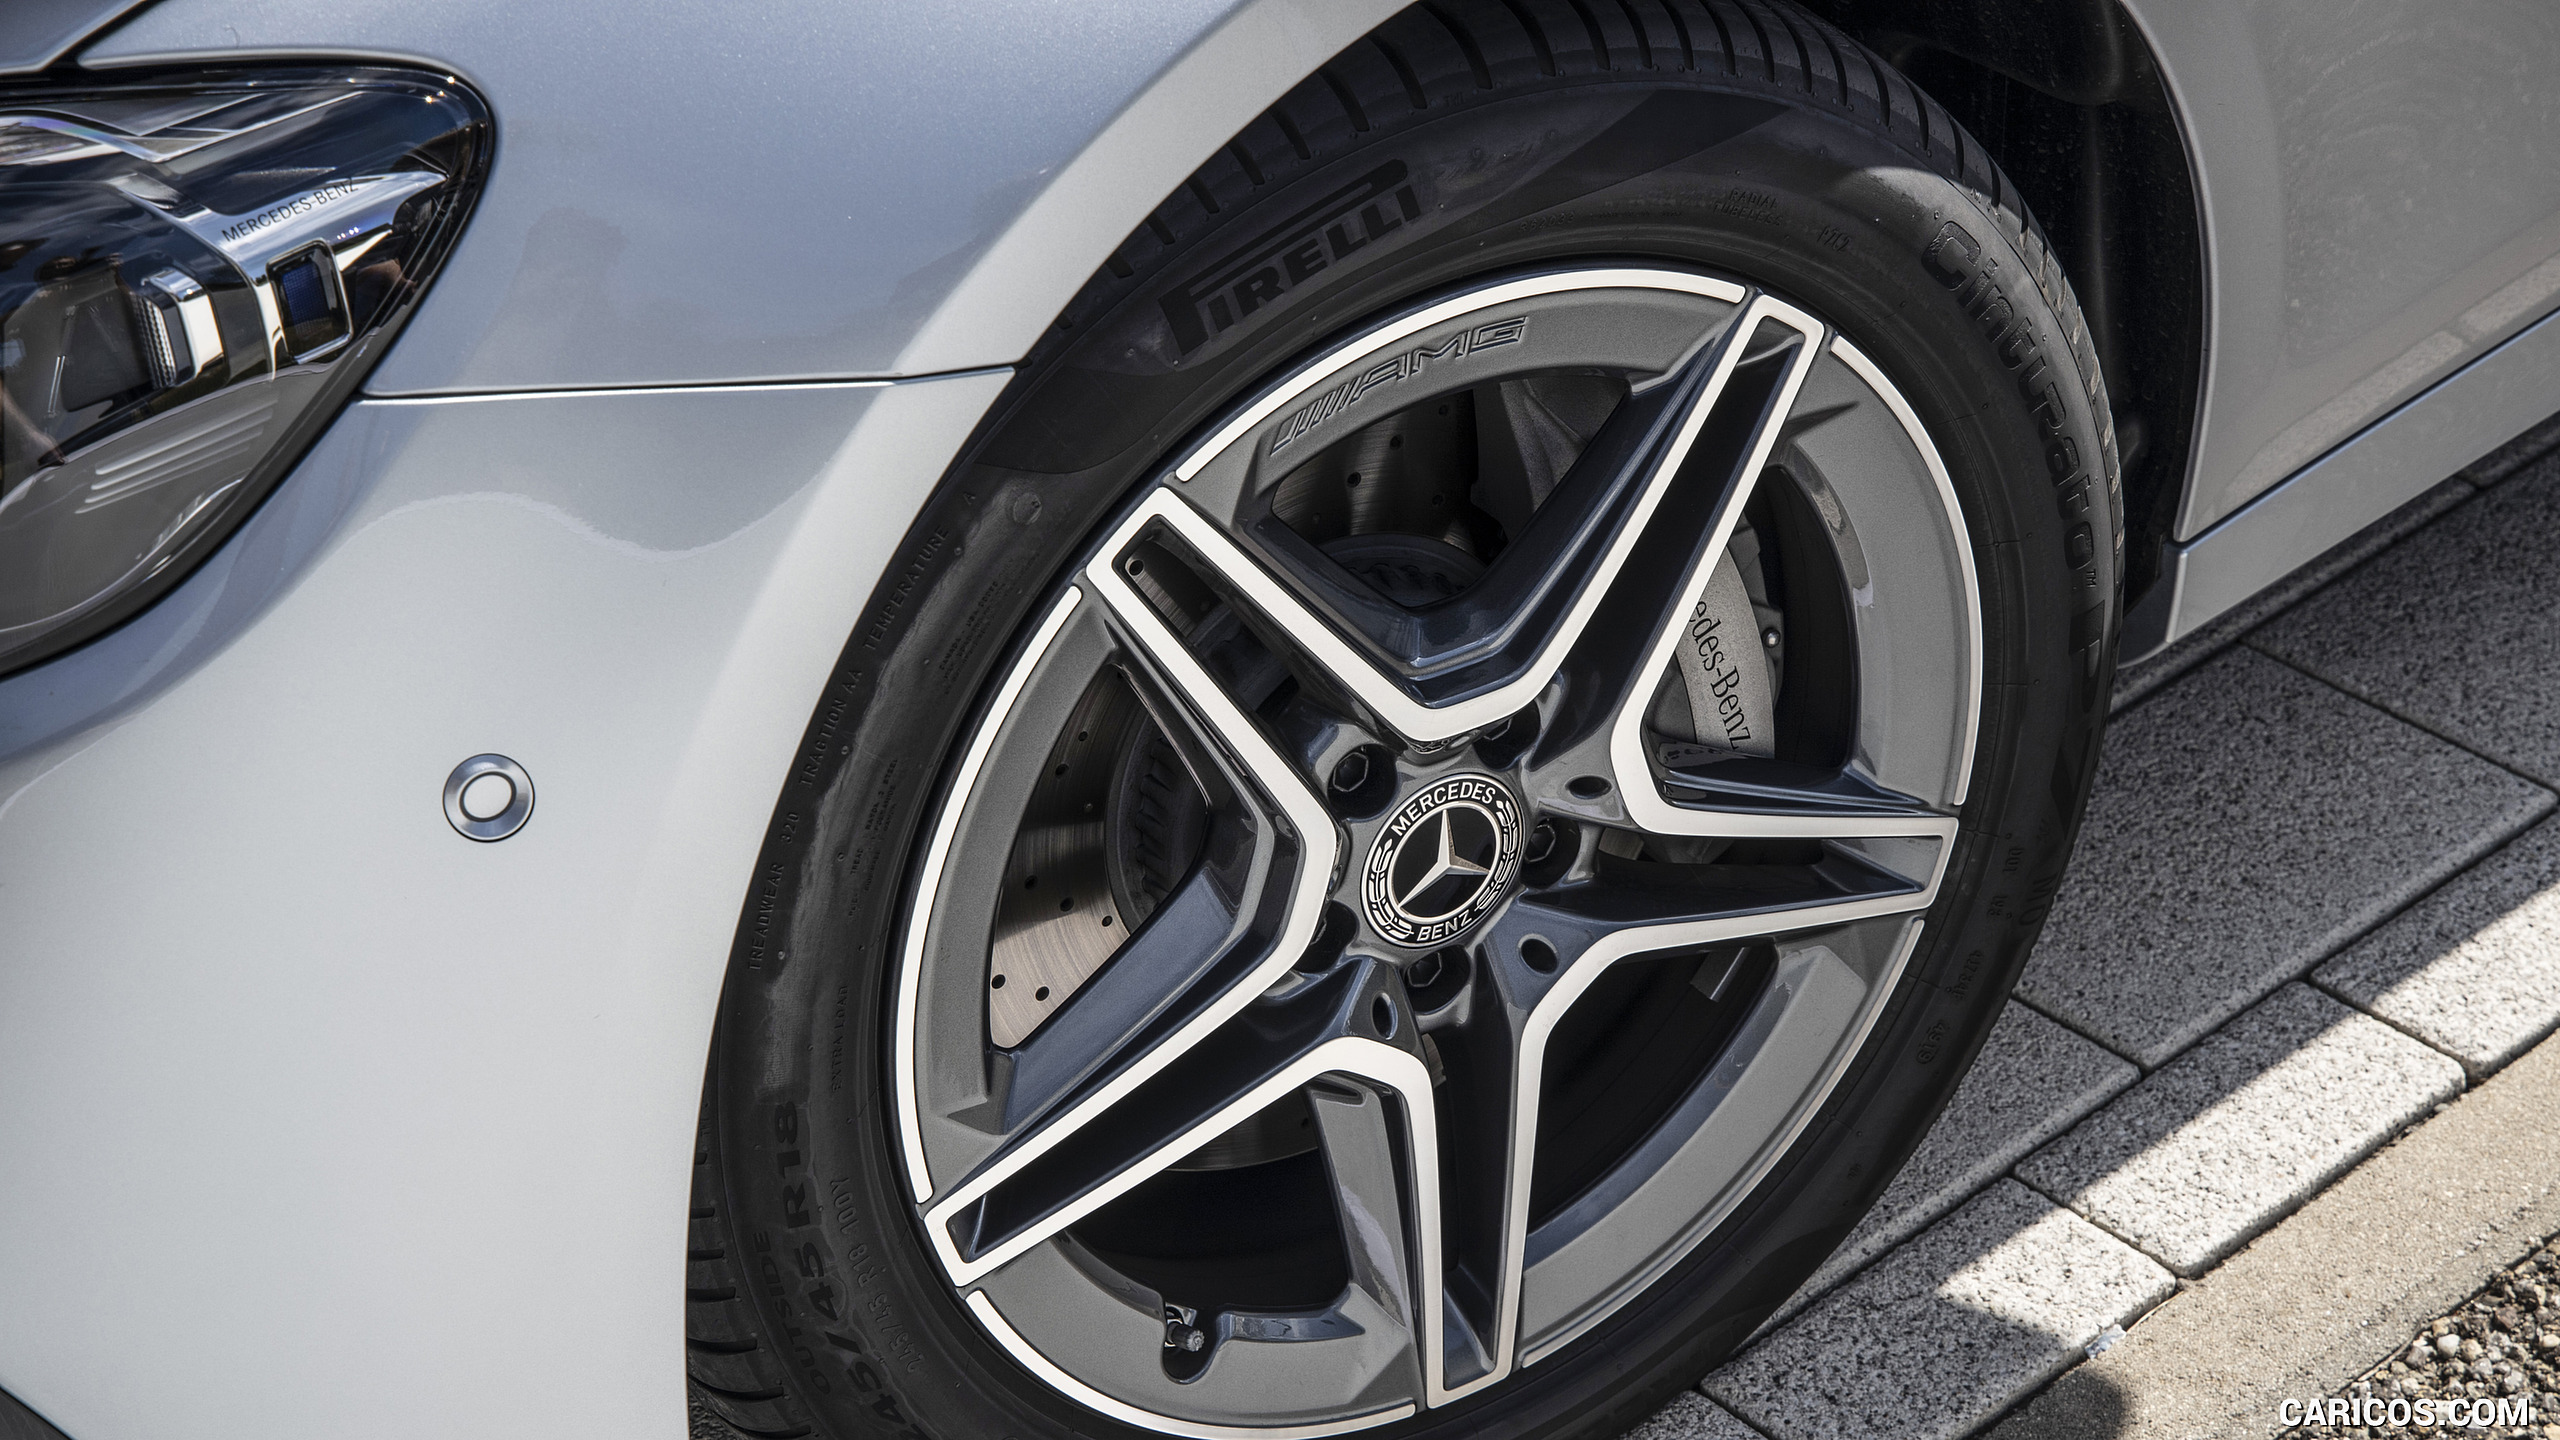 2021 Mercedes-Benz E 350 (Color: Hightech silver) - Wheel, #62 of 144